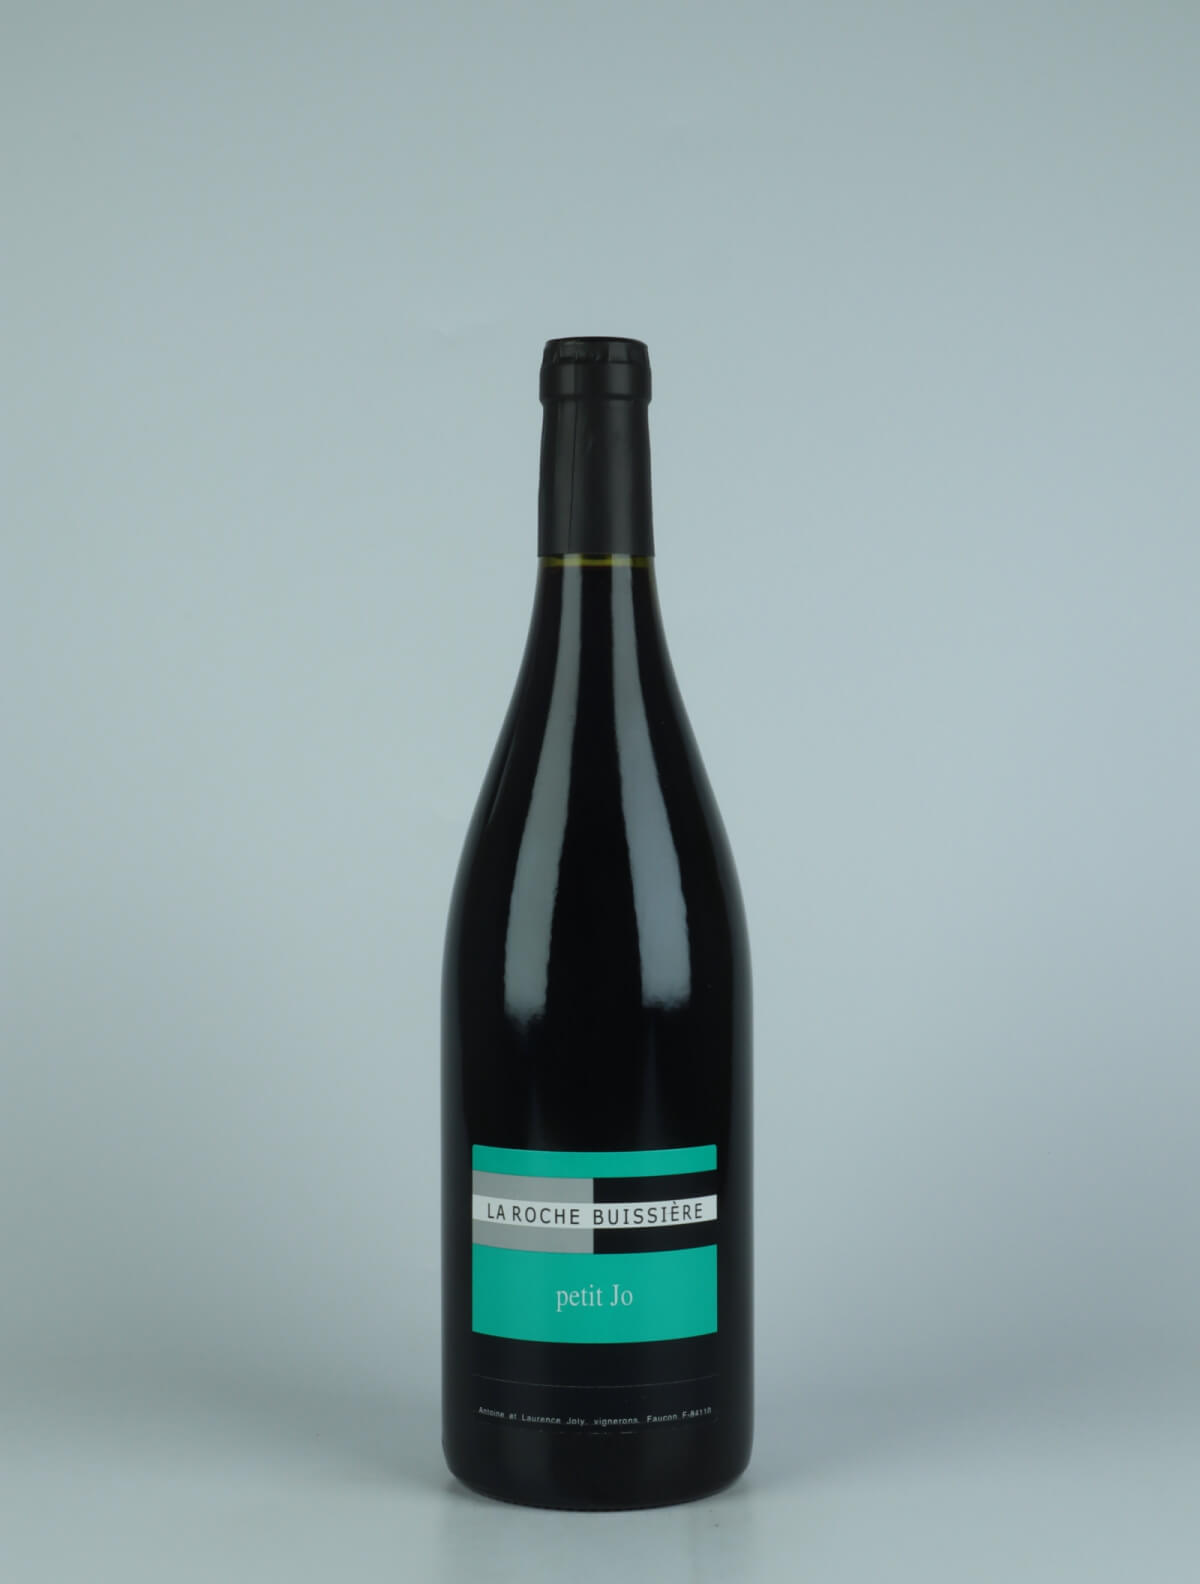 A bottle N.V. Petit Jo (2021) Red wine from La Roche Buissière, Rhône in France